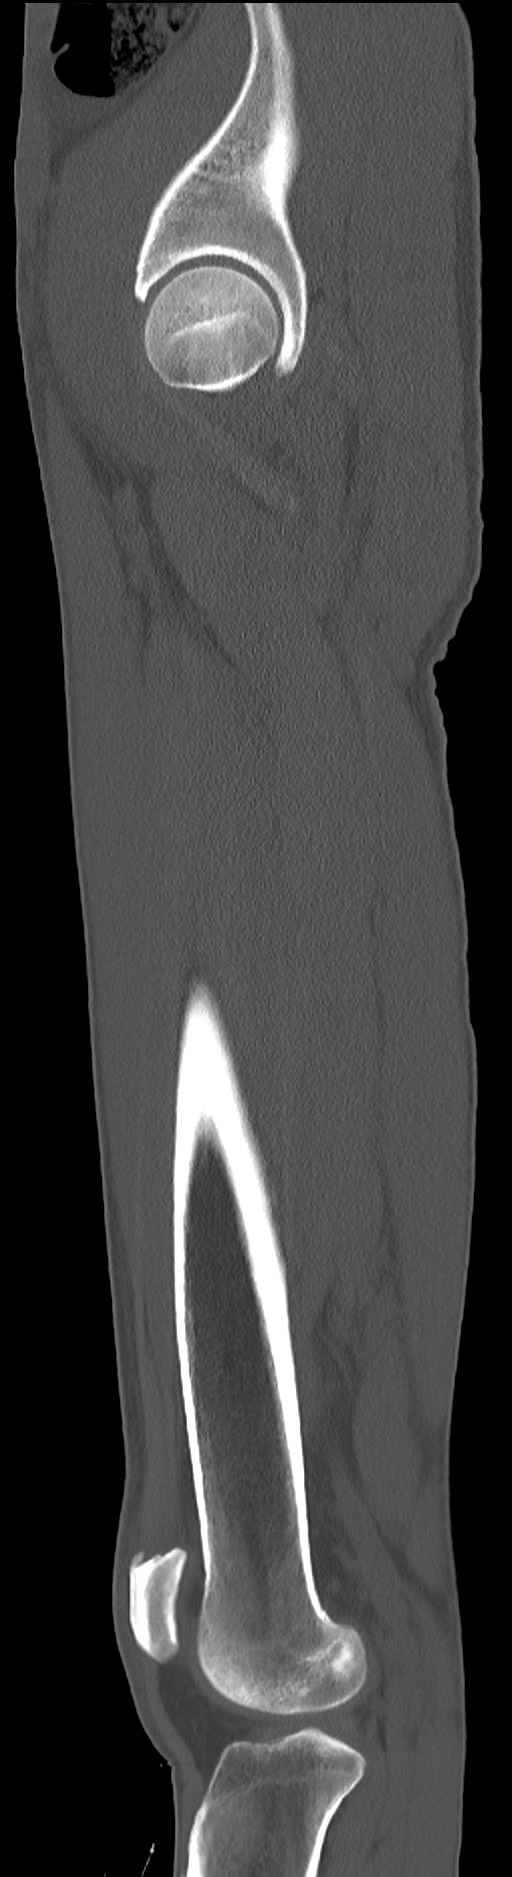 Chronic osteomyelitis (with sequestrum) (Radiopaedia 74813-85822 C 31).jpg